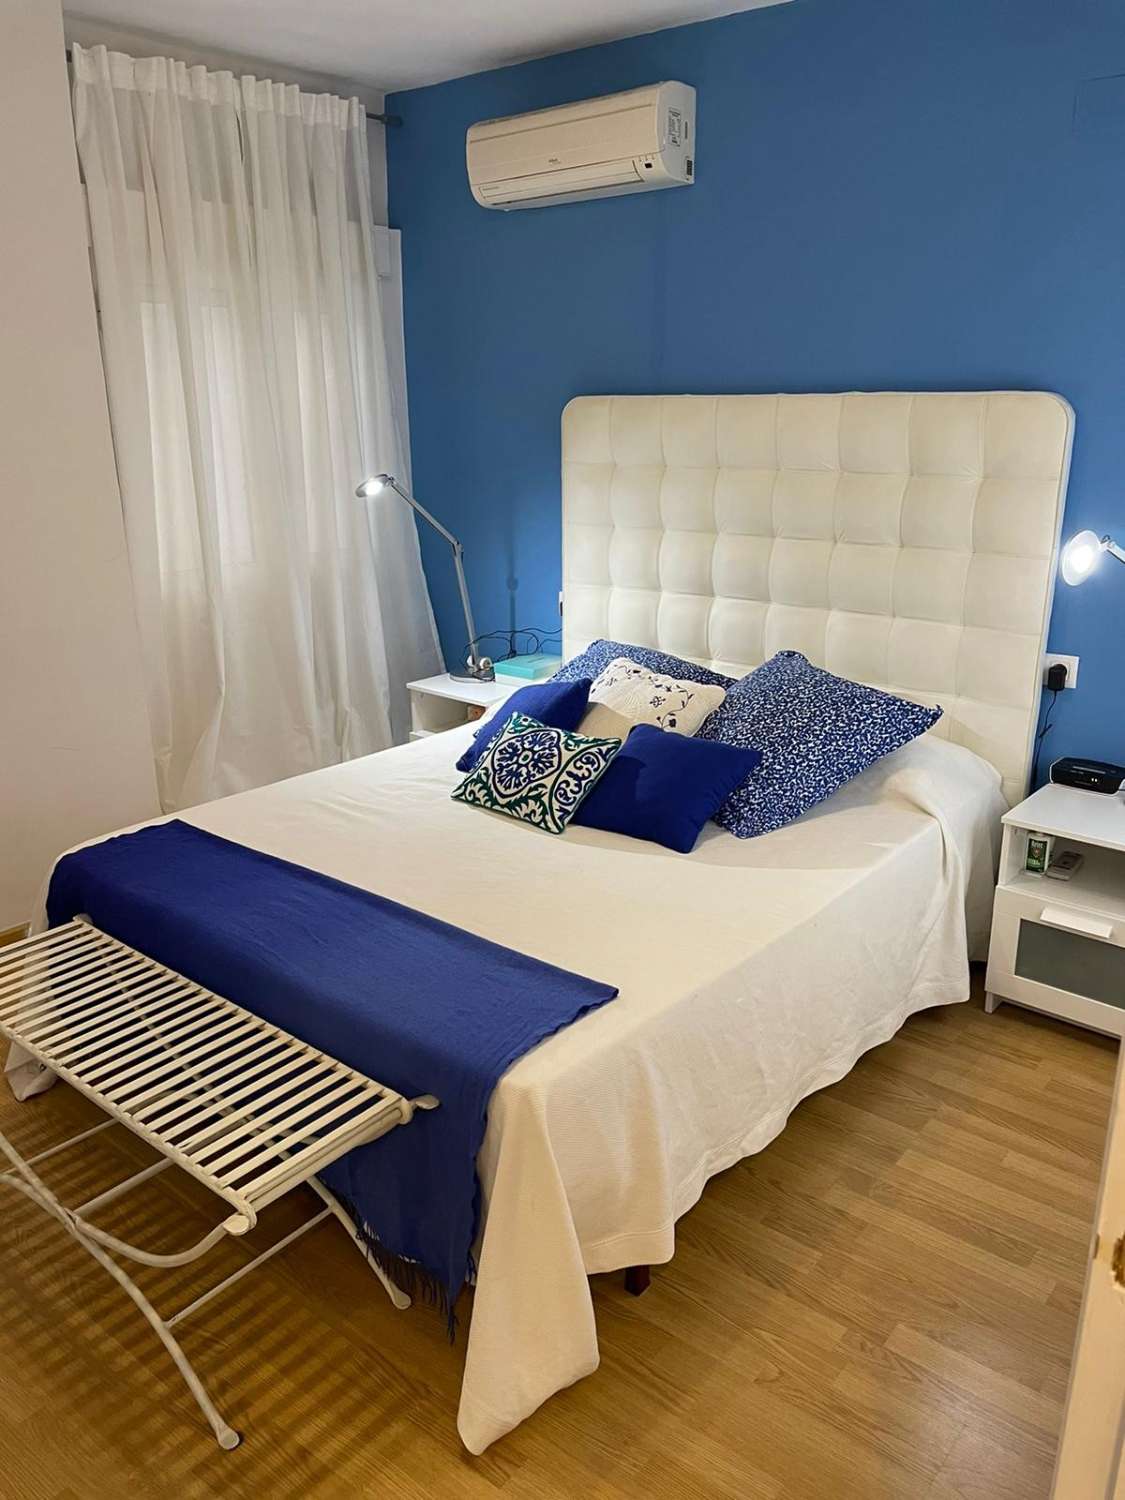 Fantasctico piso de 3 dormitorios con vistas al mar Torrevieja - Paseo maritimo